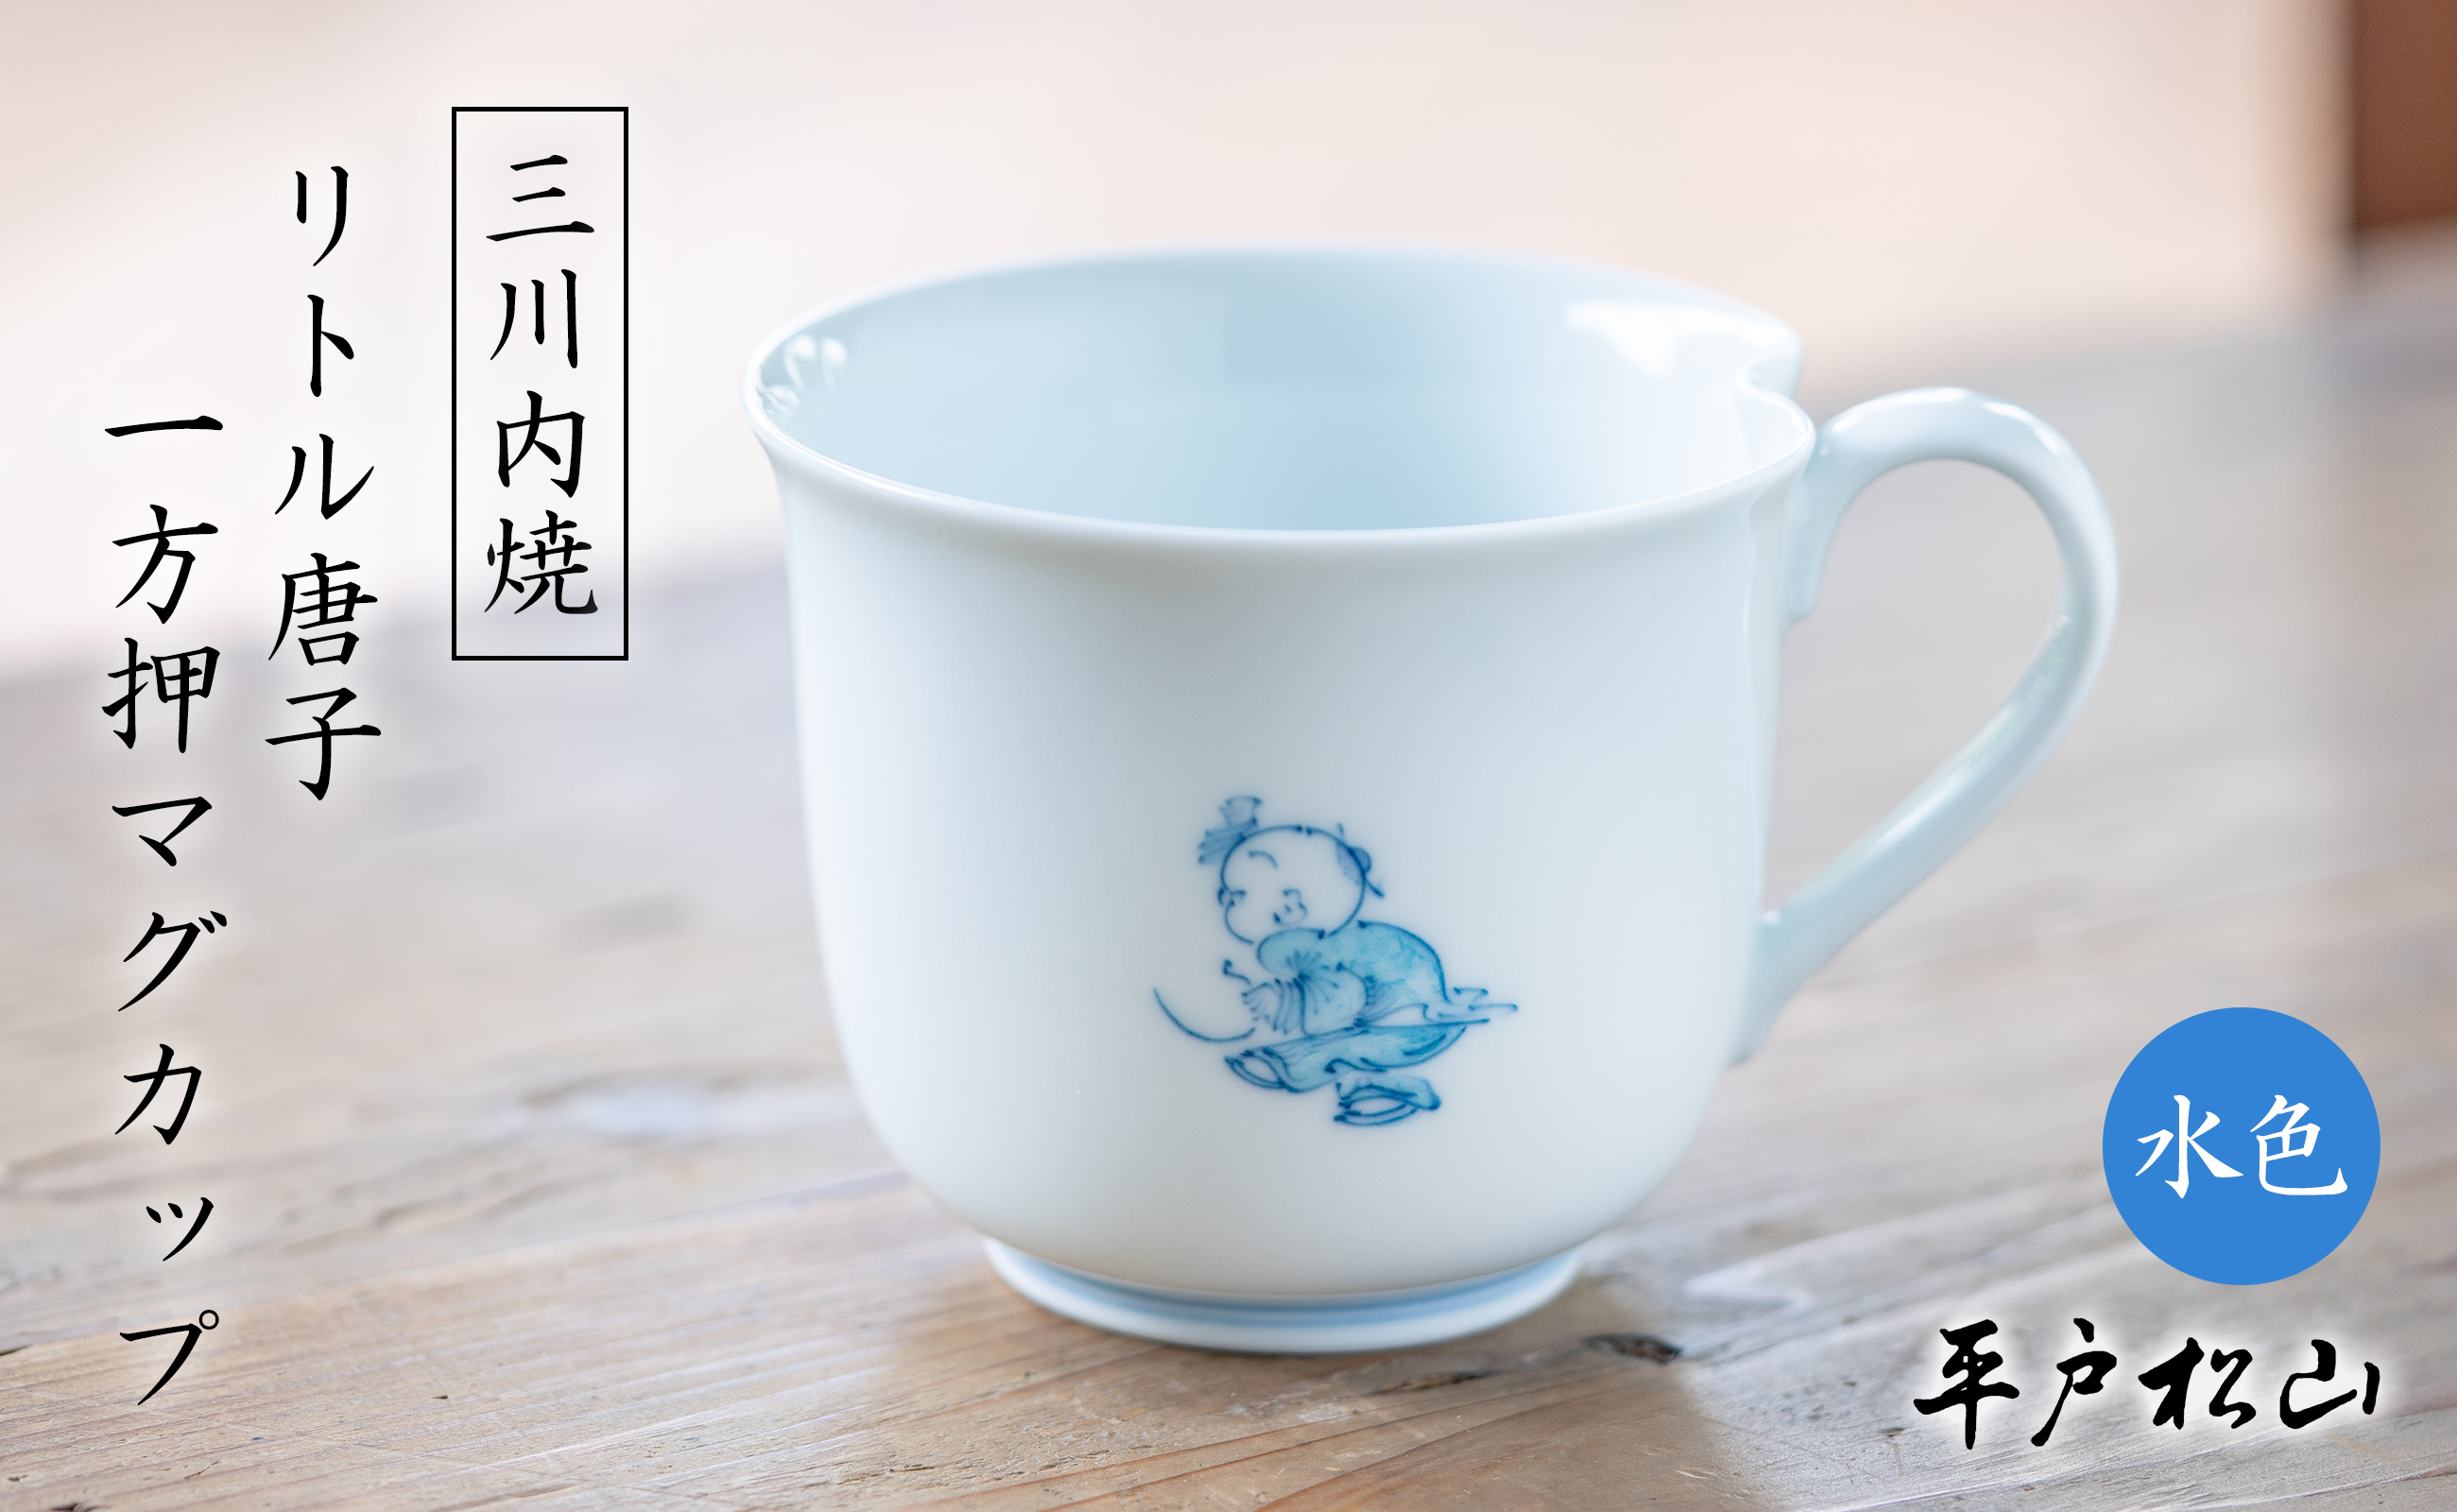 〈平戸松山窯〉一方押マグカップ (リトル唐子 水色) 1個 手描き 染付 食器 コップ コーヒーカップ 